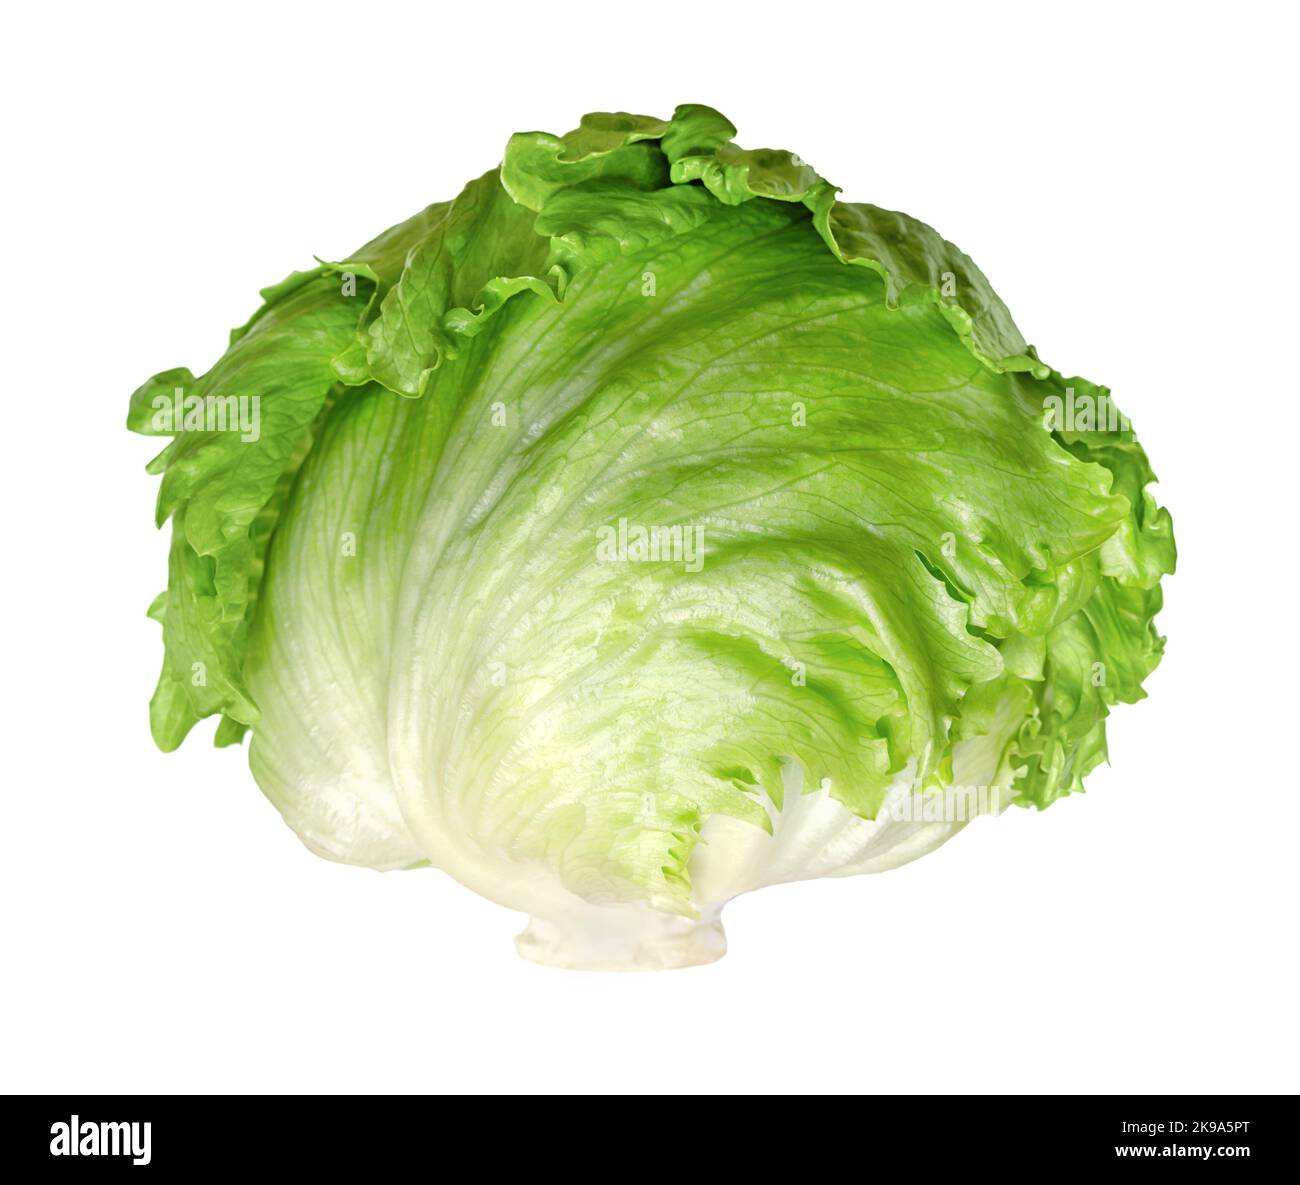 Laitue iceberg, ou cropphead, isolée, vue de face, sur fond blanc. Tête de salade fraîche, vert clair, parfois aussi appelée laitue de chou. Banque D'Images